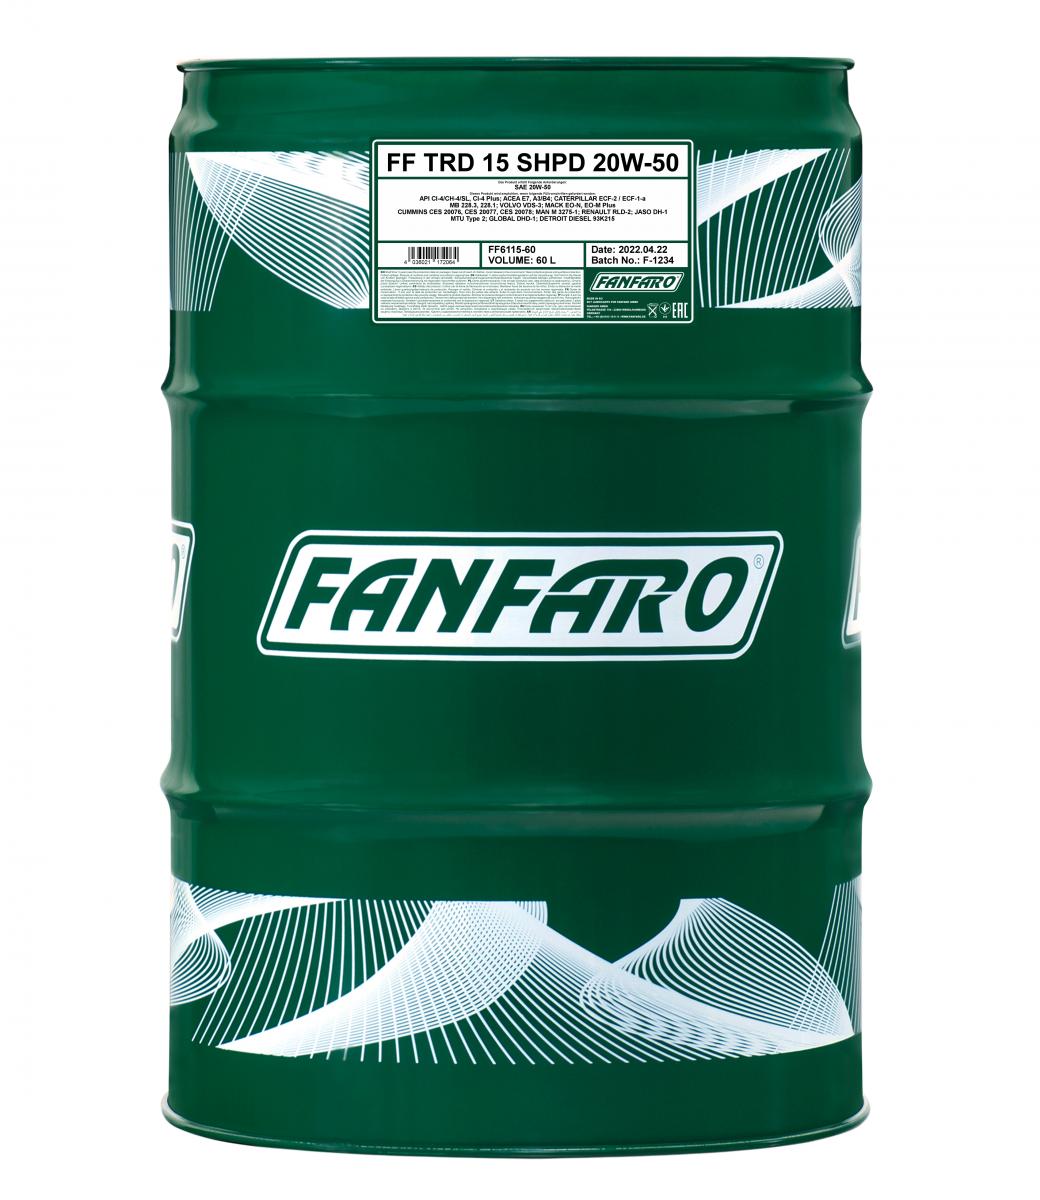 FANFARO TRD-15 SHPD 20W-50